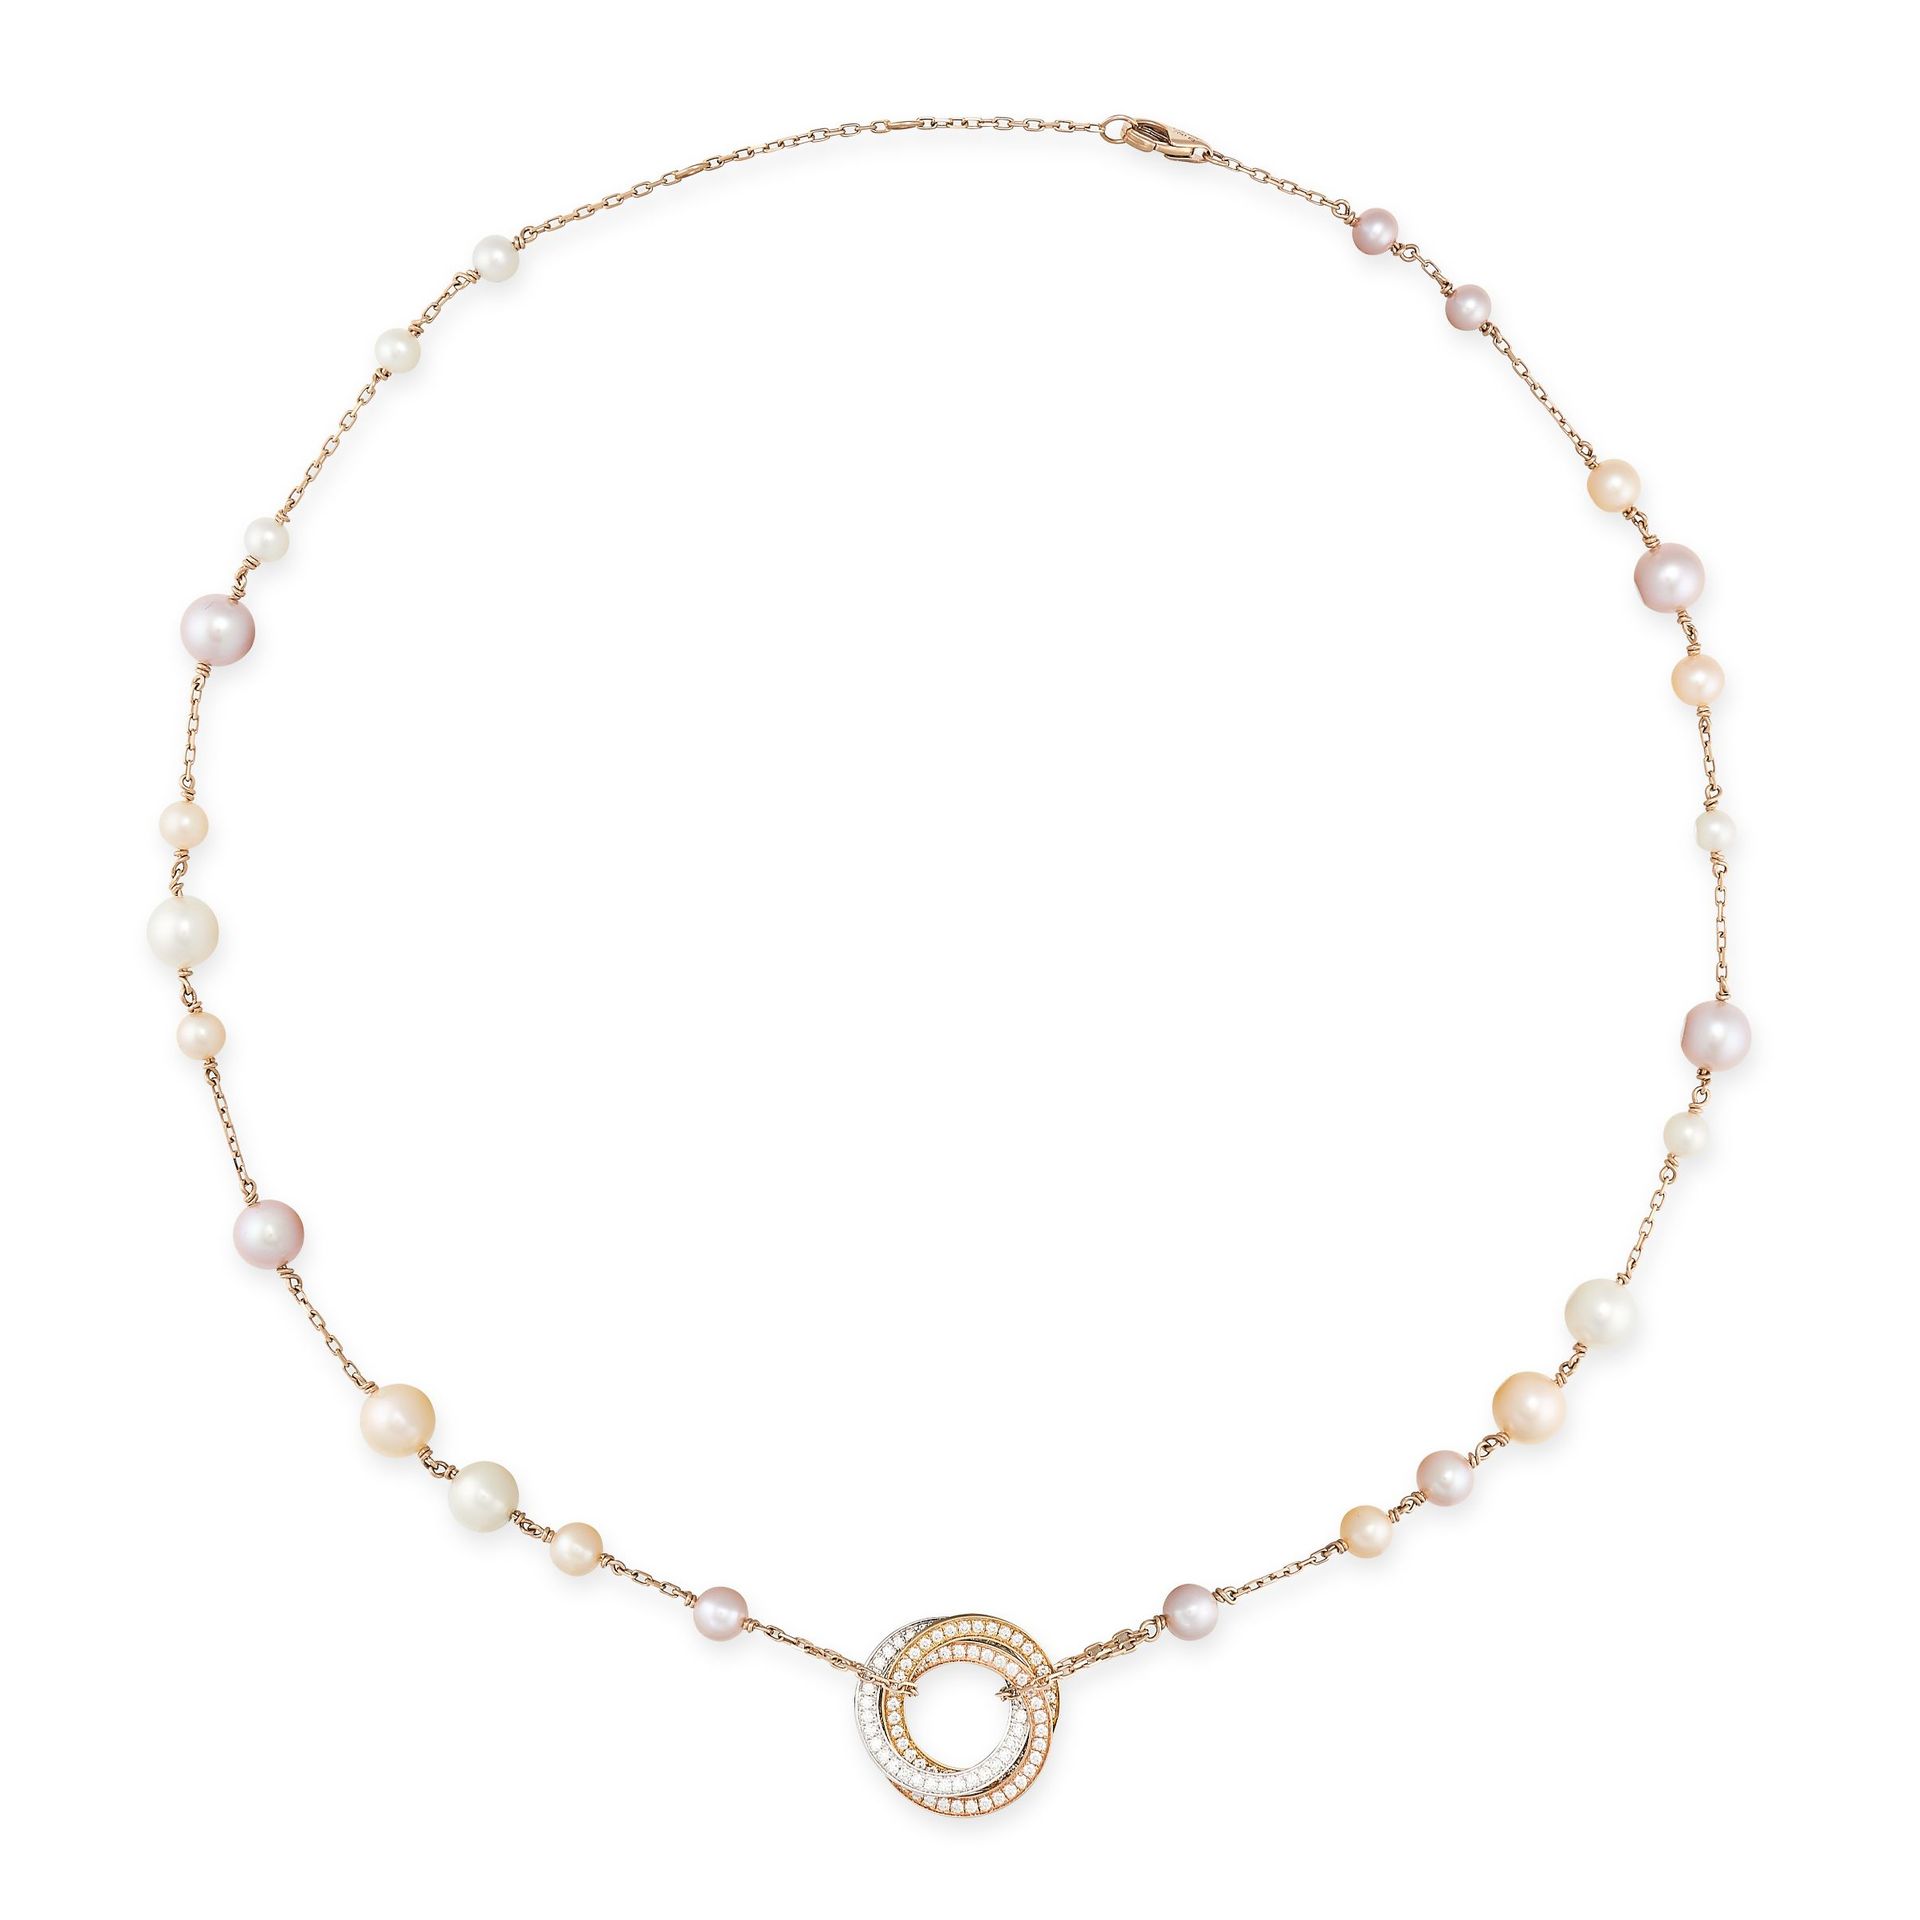 Null 卡地亚，18K玫瑰金三位一体珍珠项链，包括一条多色珍珠项链和一个密镶钻石的三位一体吊坠，设计为三个互锁的玫瑰金、黄金和白金的开放圆环，署名卡地亚并有编&hellip;